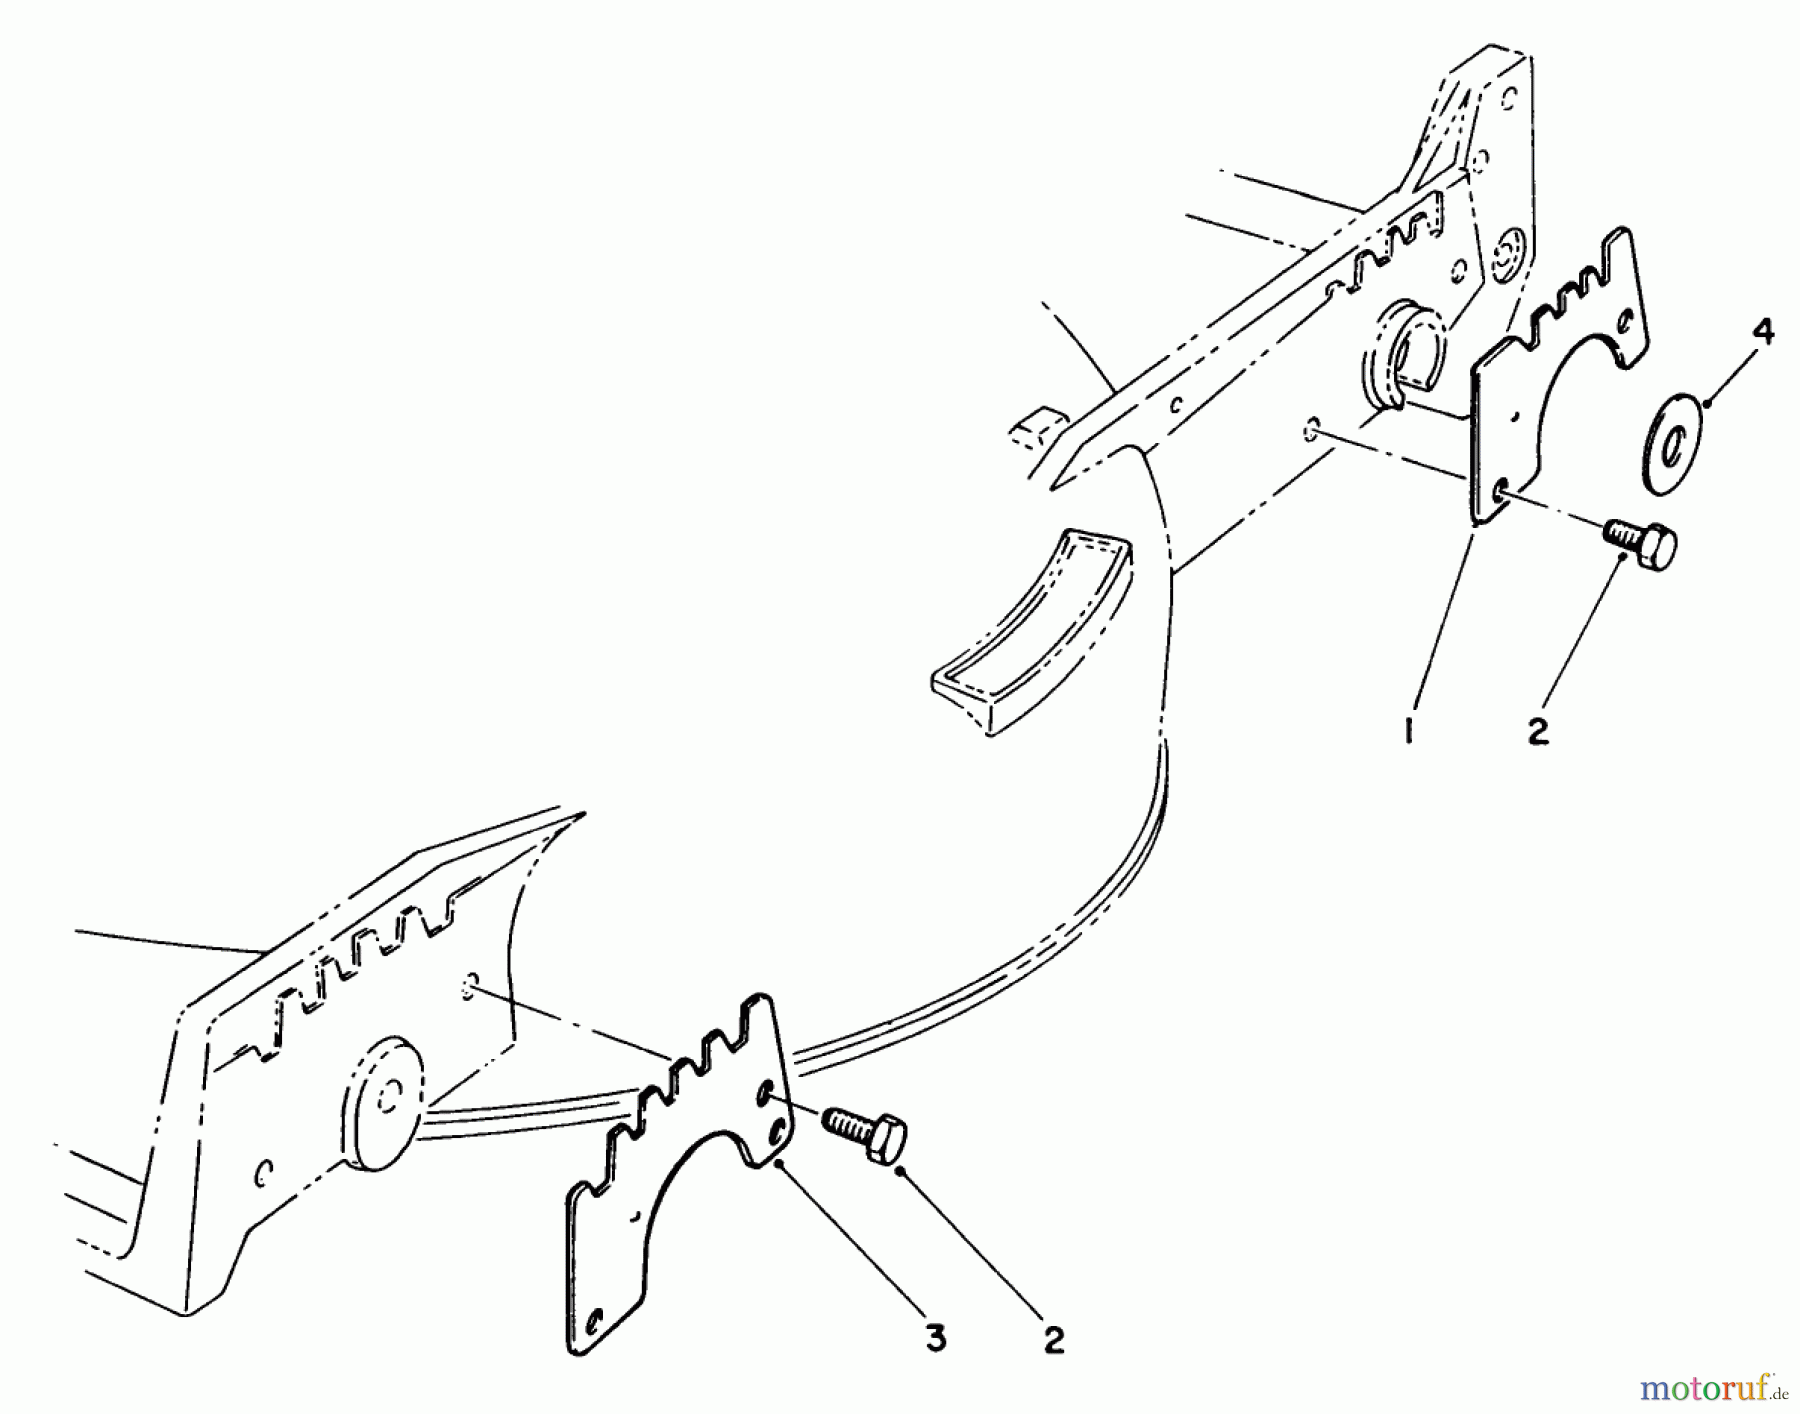  Toro Neu Mowers, Walk-Behind Seite 1 20584C - Toro Lawnmower, 1989 (9000001-9999999) WEAR PLATE KIT NO. 49-4080 (OPTIONAL)